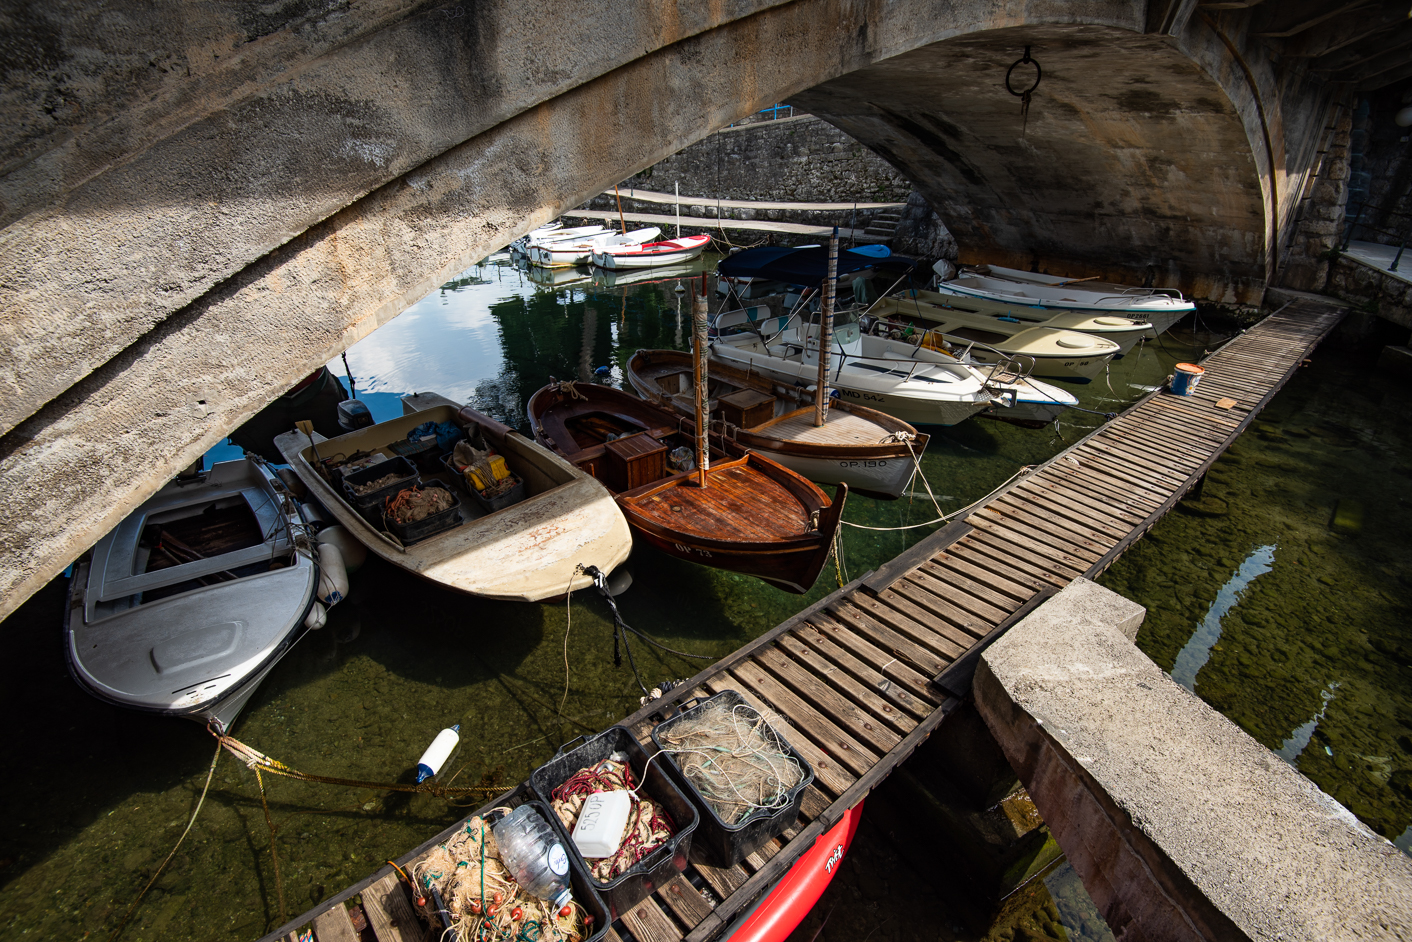 Ičići - the fisherman's boats